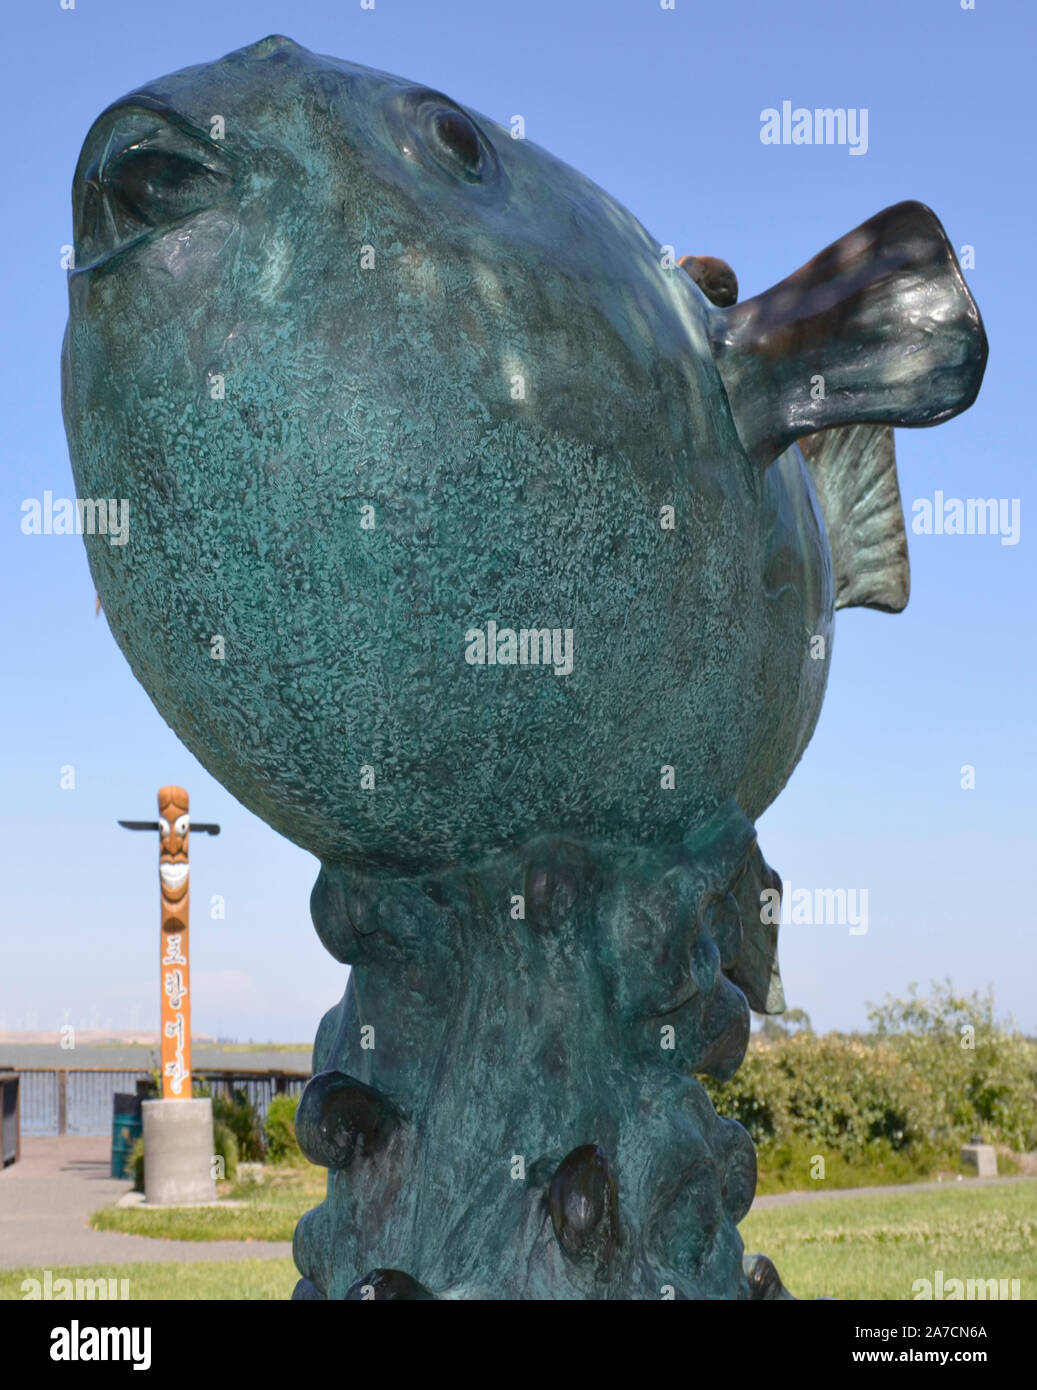 La scultura in bronzo di un pesce fugu, un dono dalla città sorella Shiminoseki, Giappone a Pittsburg, California USA. San Joaquin River, California Delta Foto Stock